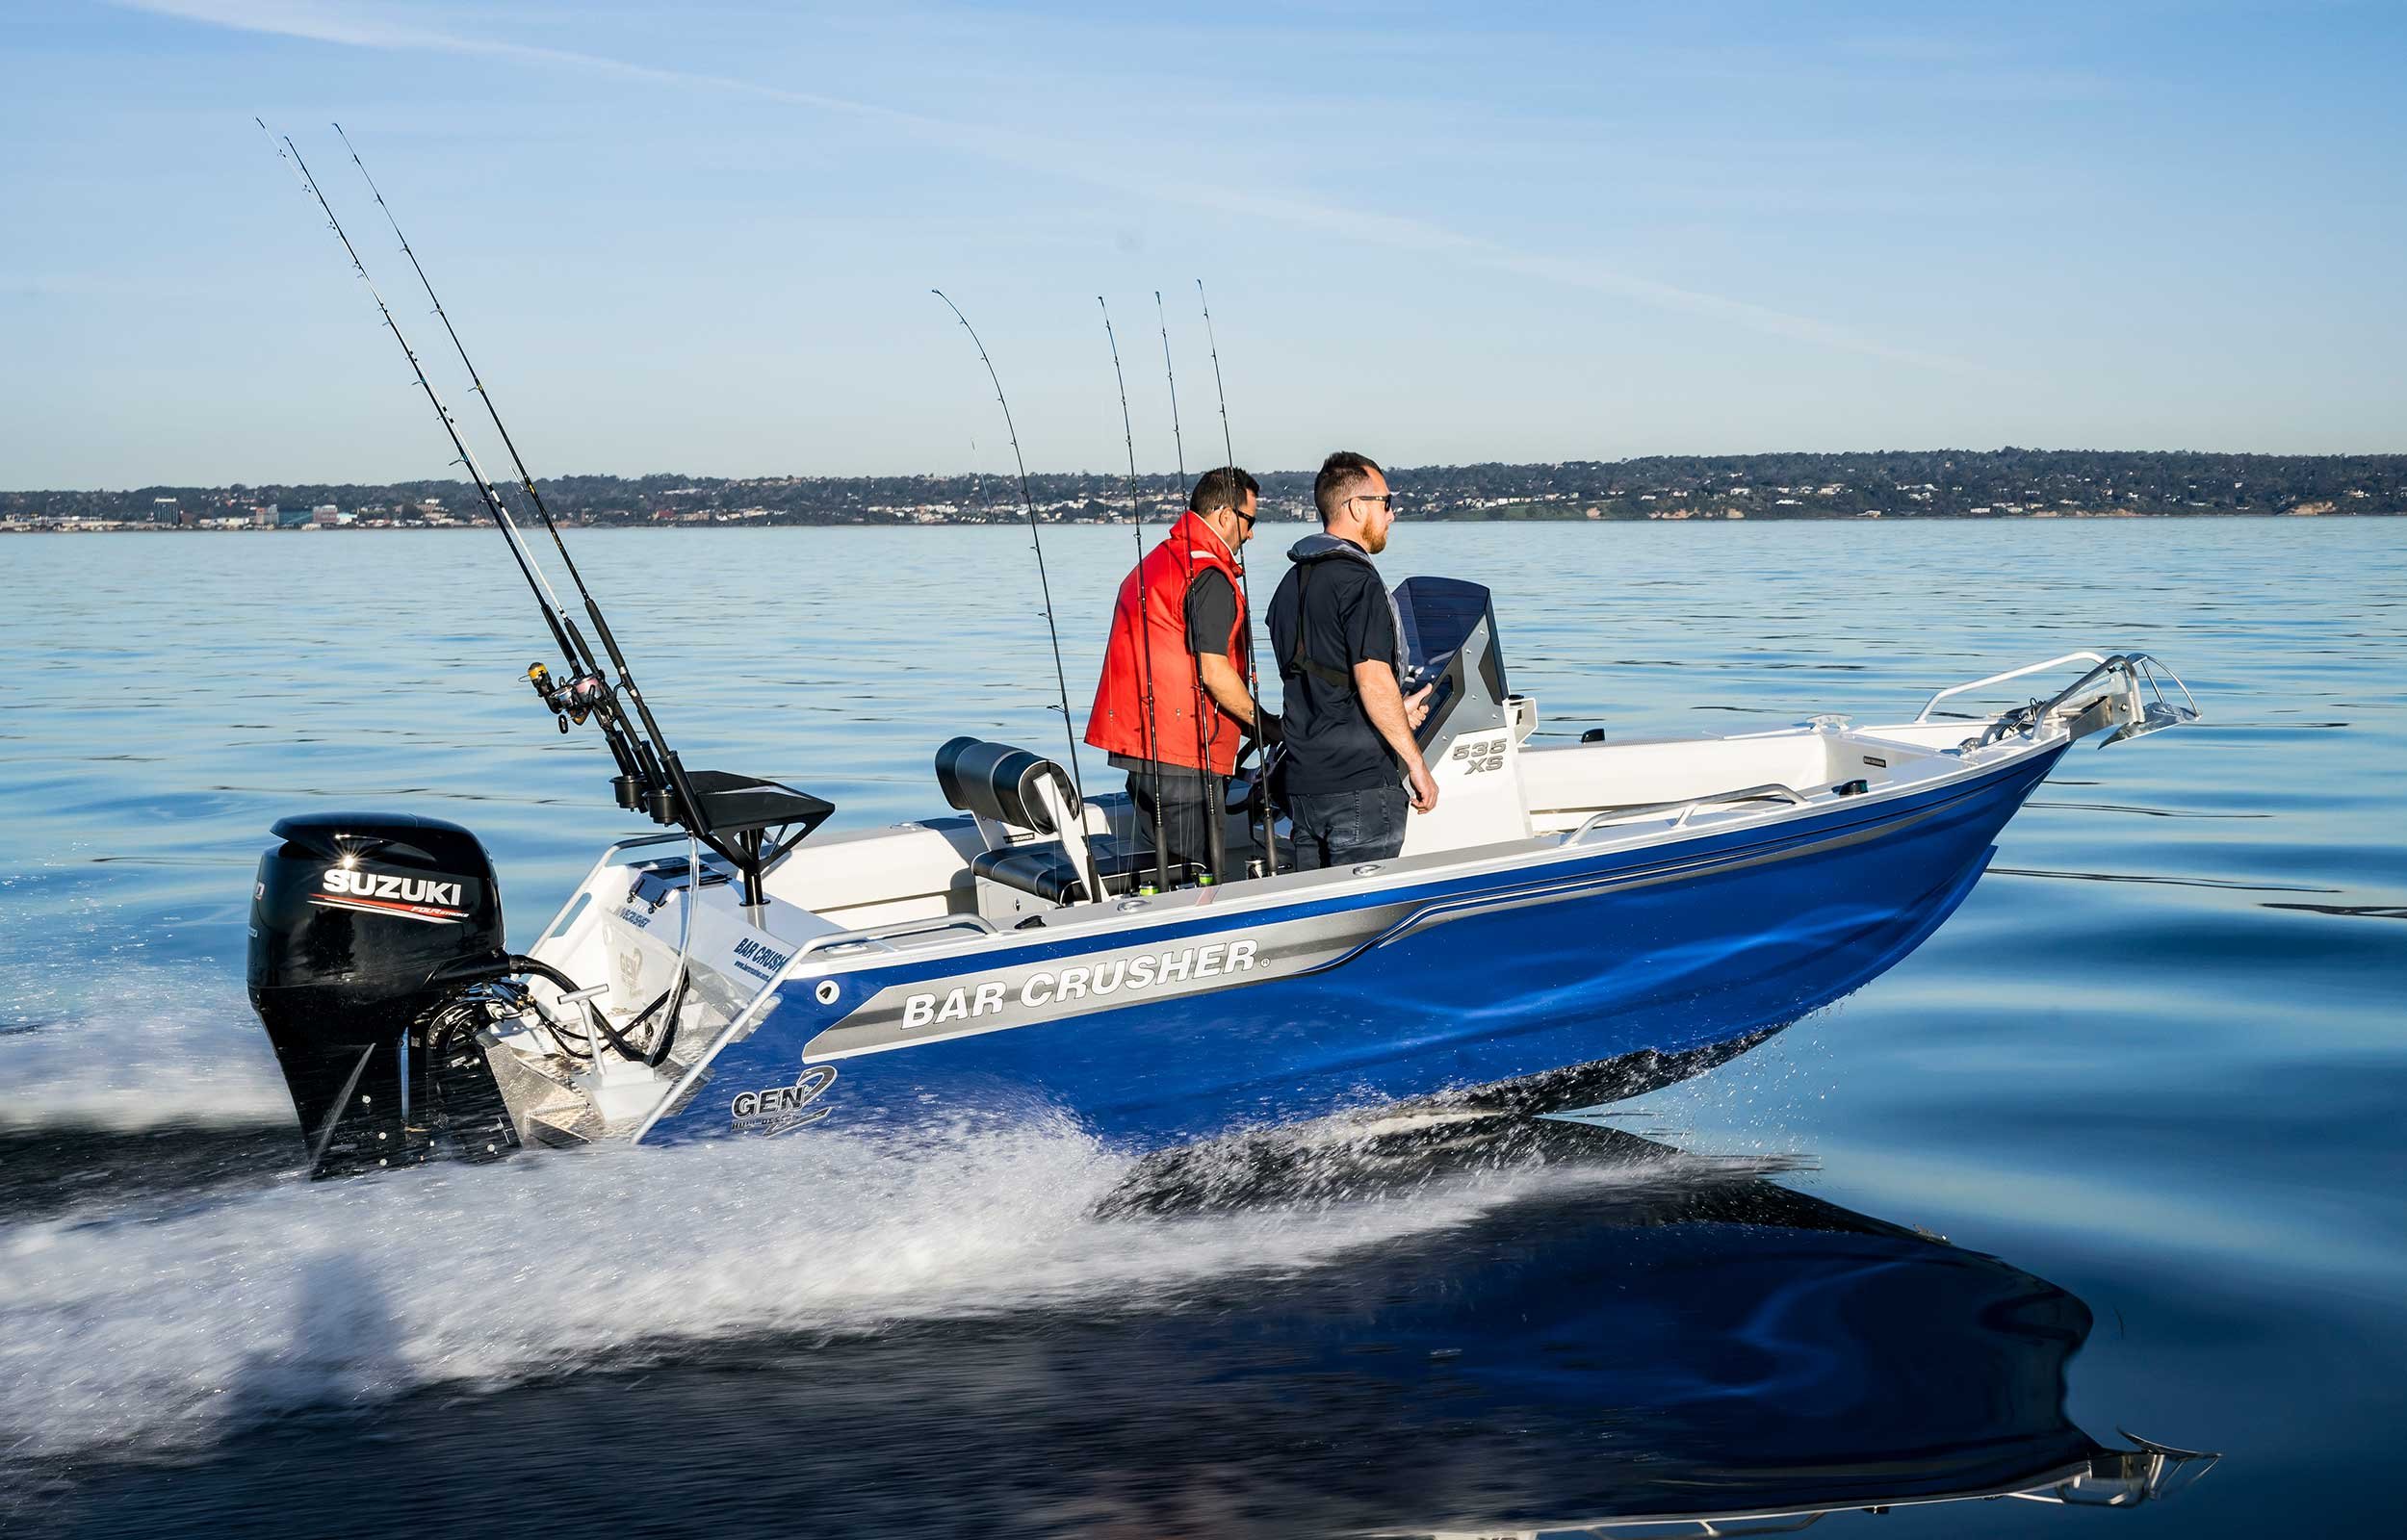 models-bar-crusher-535xs-plate-aluminium-fishing-boat-2019-web-6